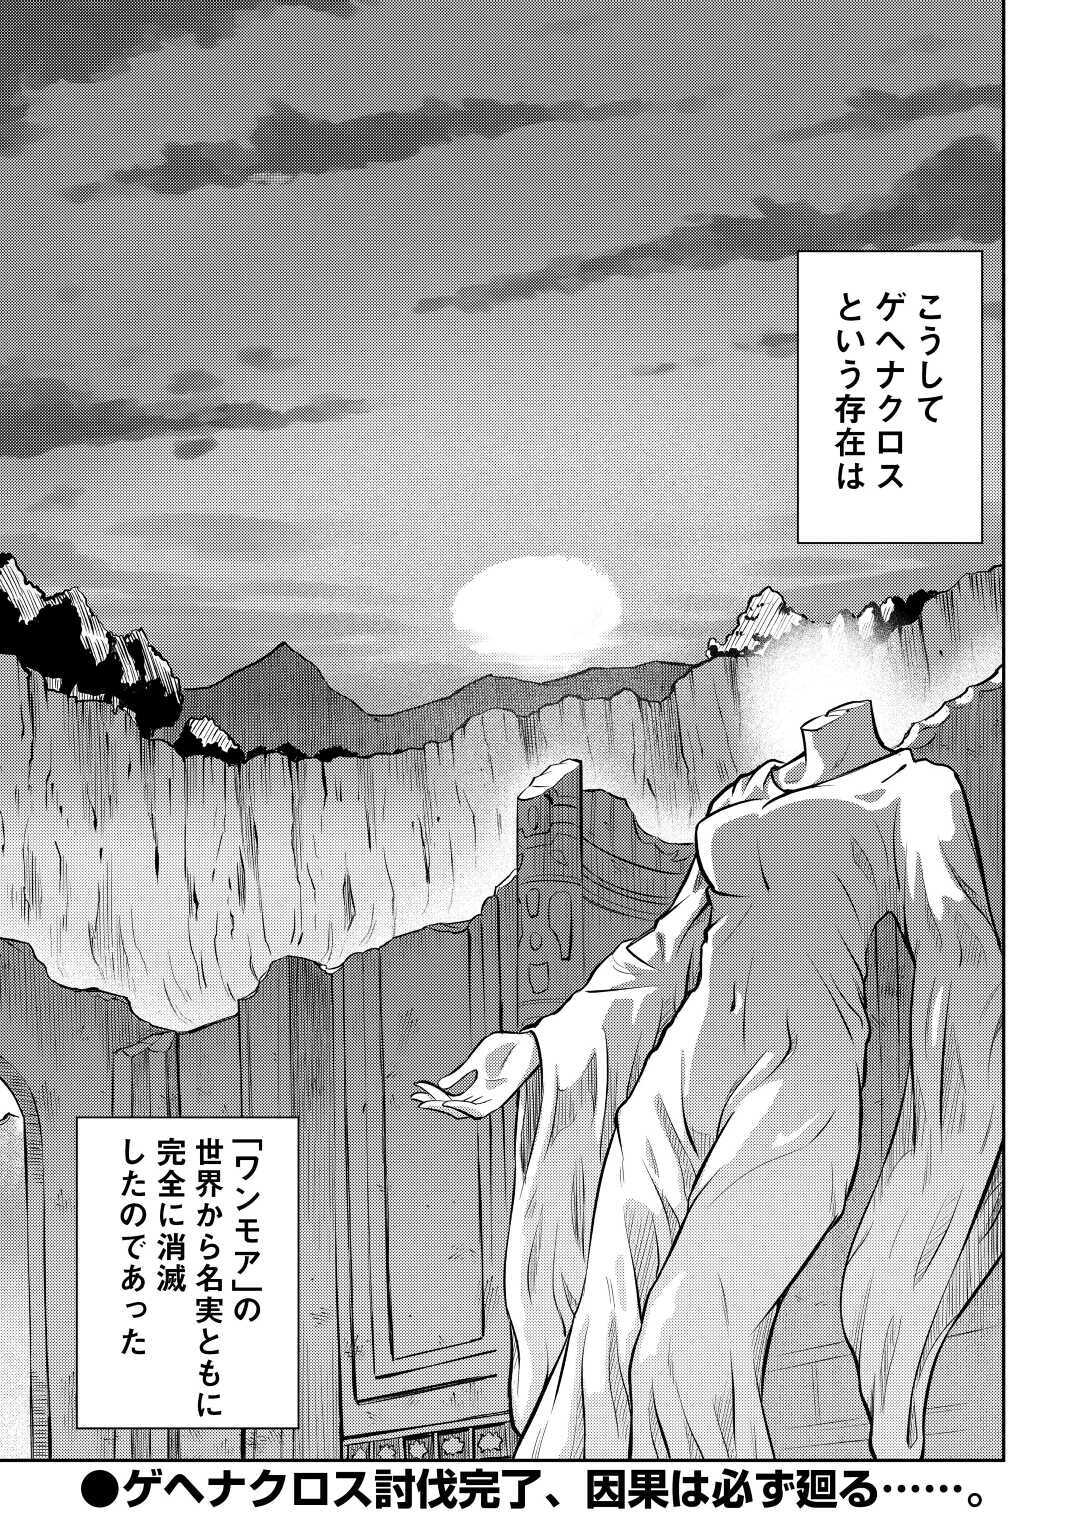 Toaru Ossan no VRMMO Katsudouki - Chapter 66.5 - Page 15